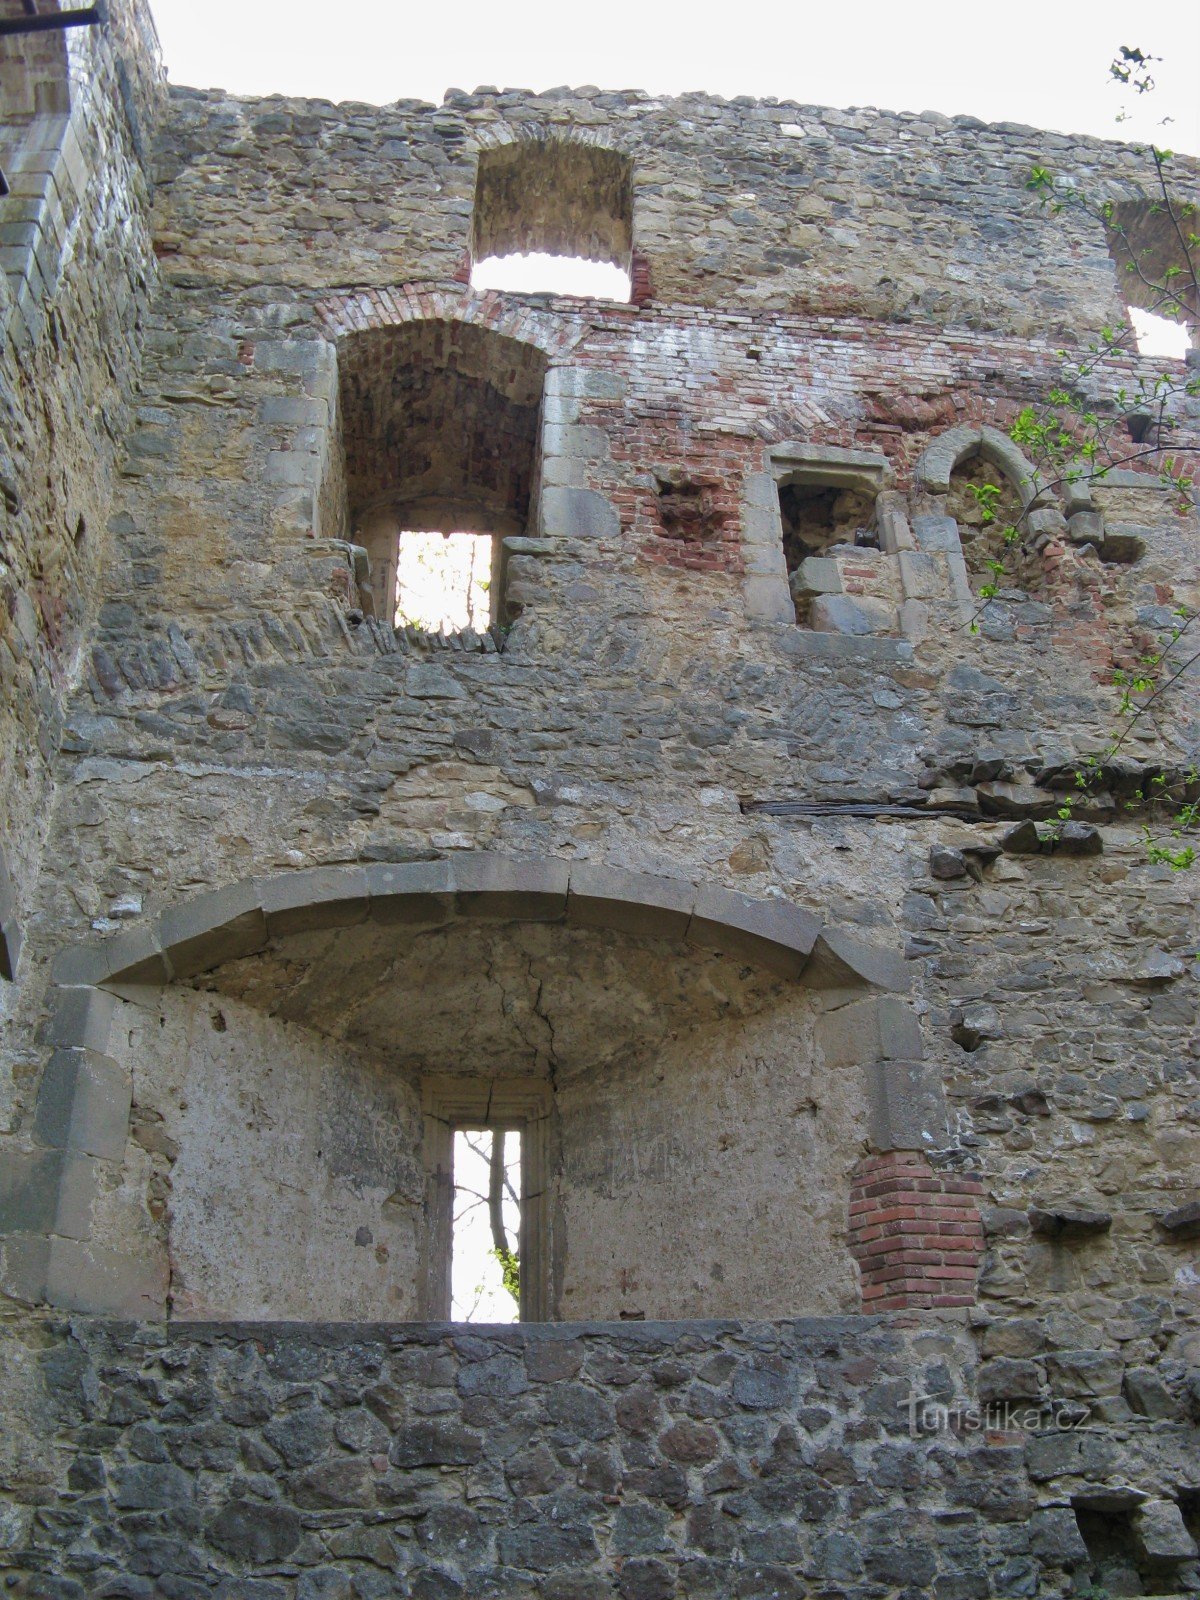 Dvorac Cimburk 2011